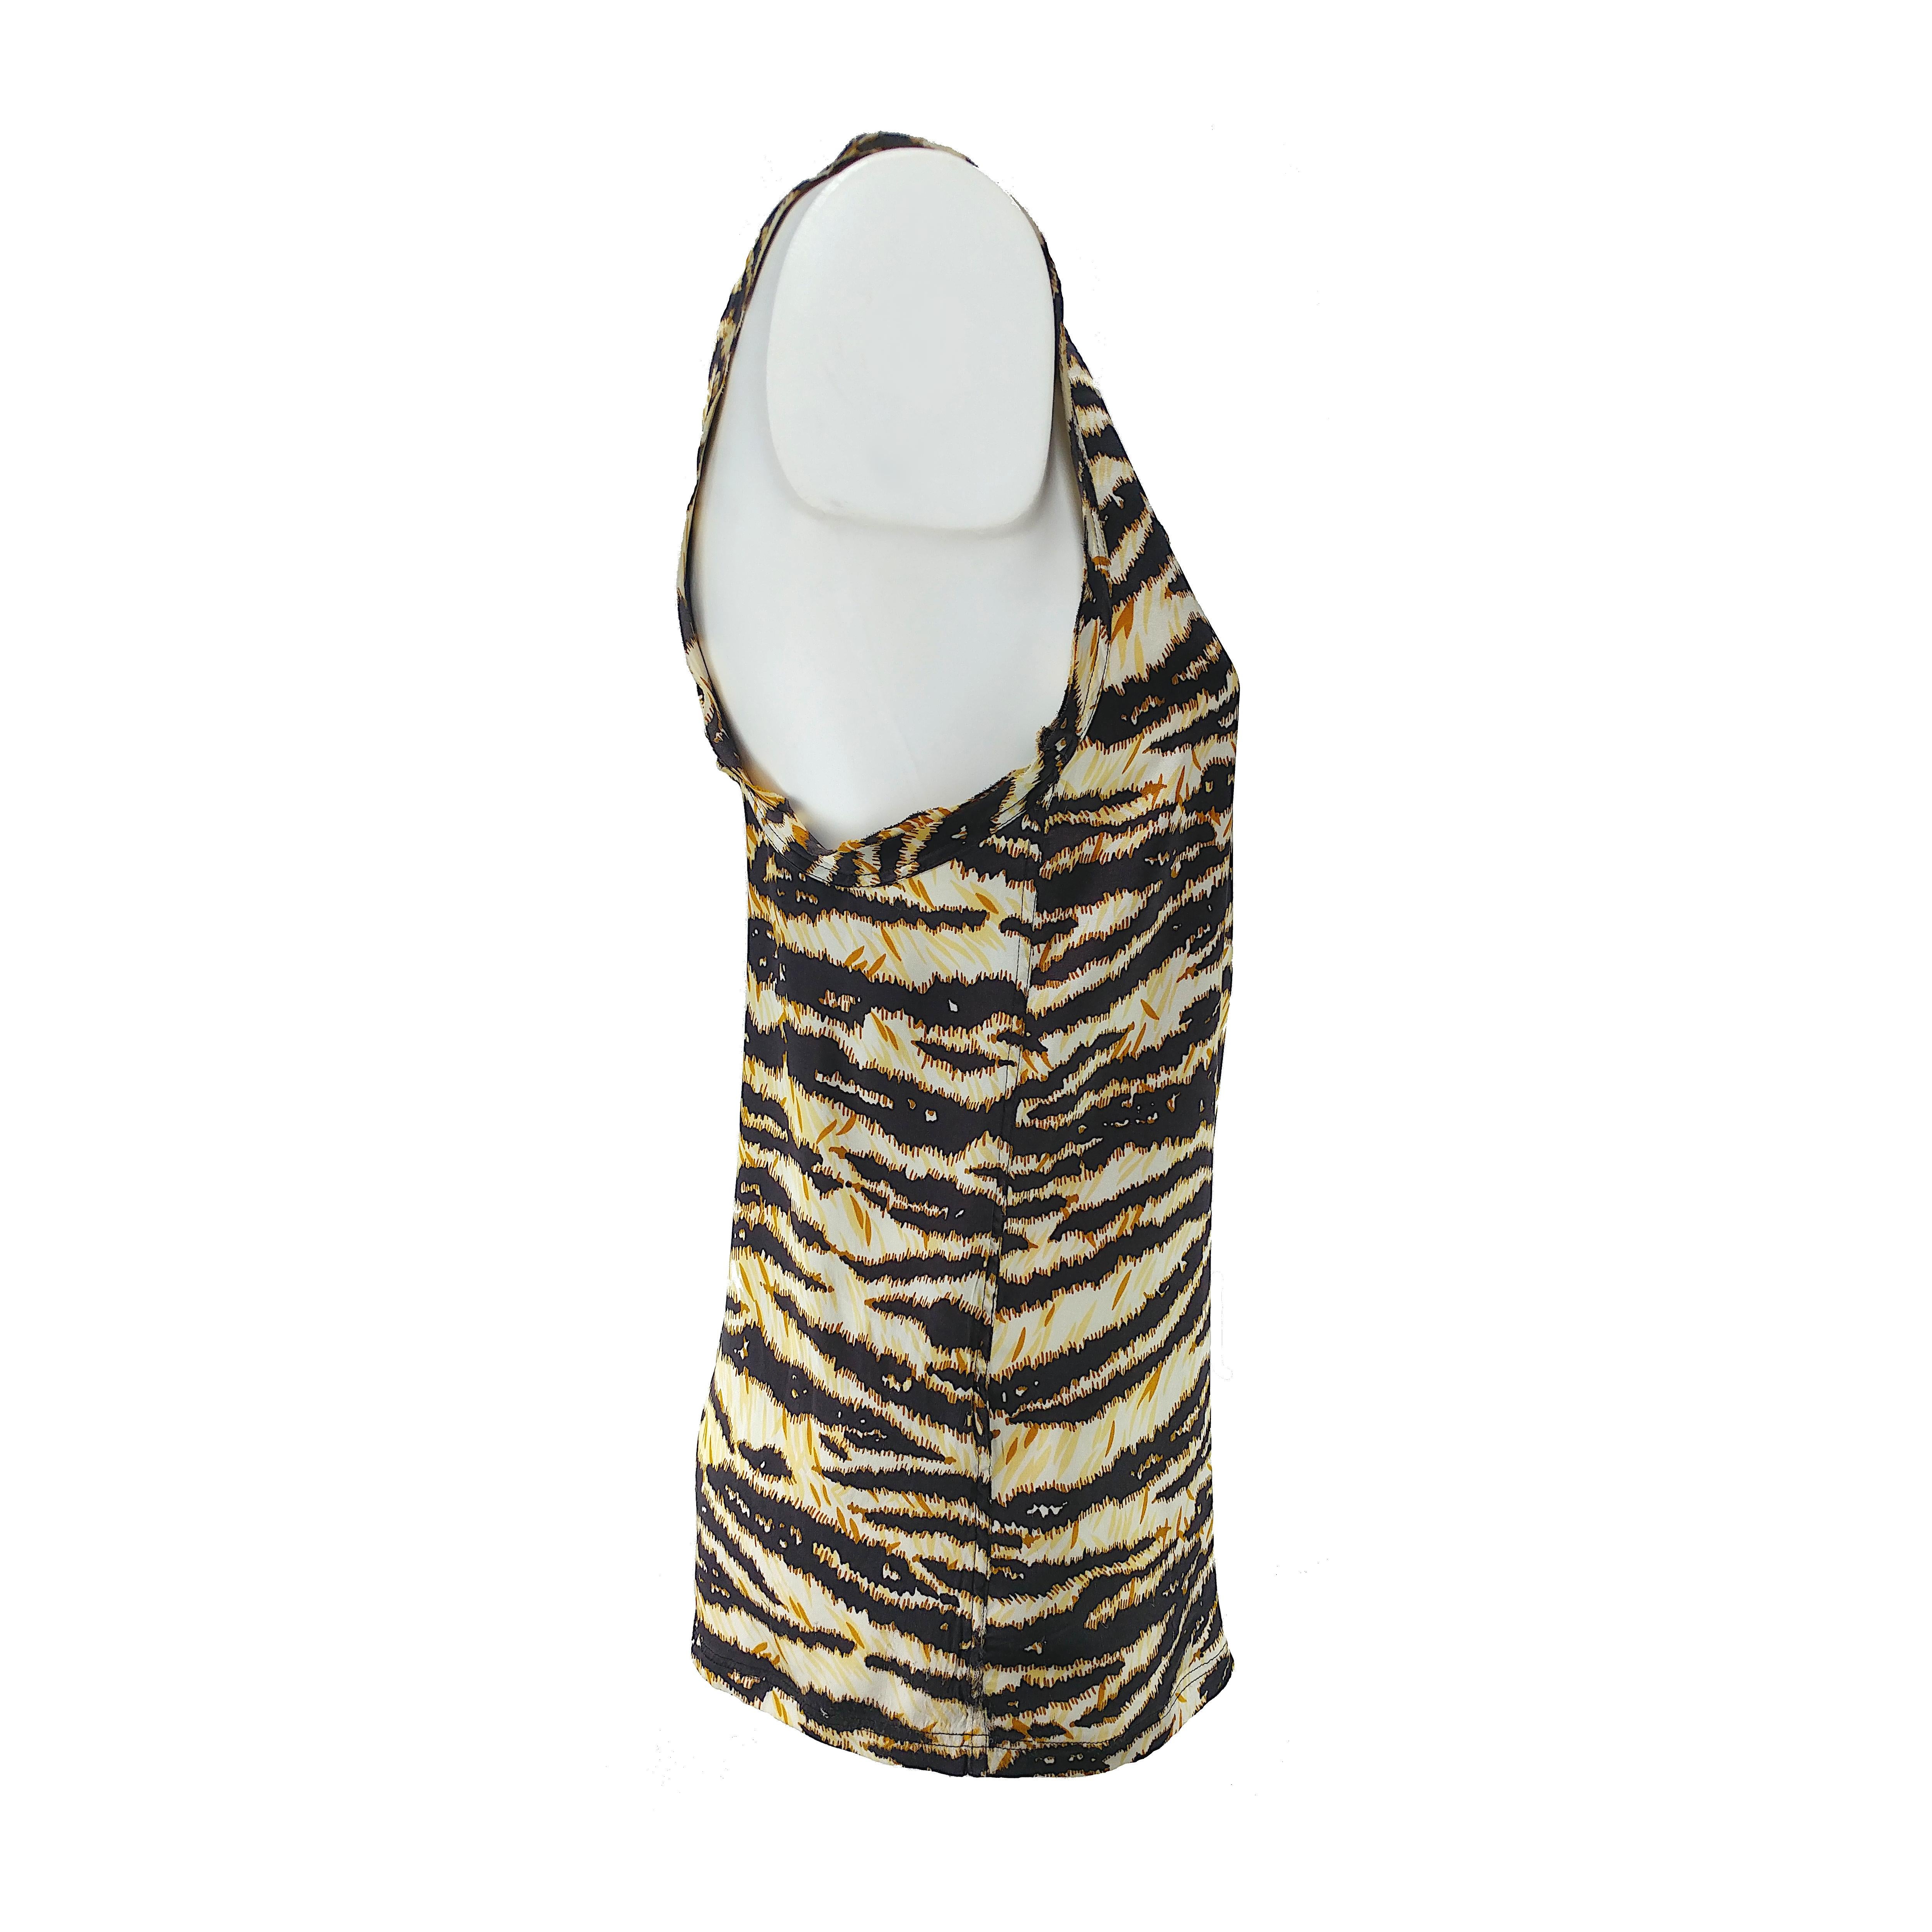 L'imprimé tigre emblématique de Dolce & Gabbana est le thème principal de ce débardeur, qui présente un tissu en soie douce et une encolure à volants. Ce haut d'été est super confortable et frais et il est livré dans d'excellentes conditions sans